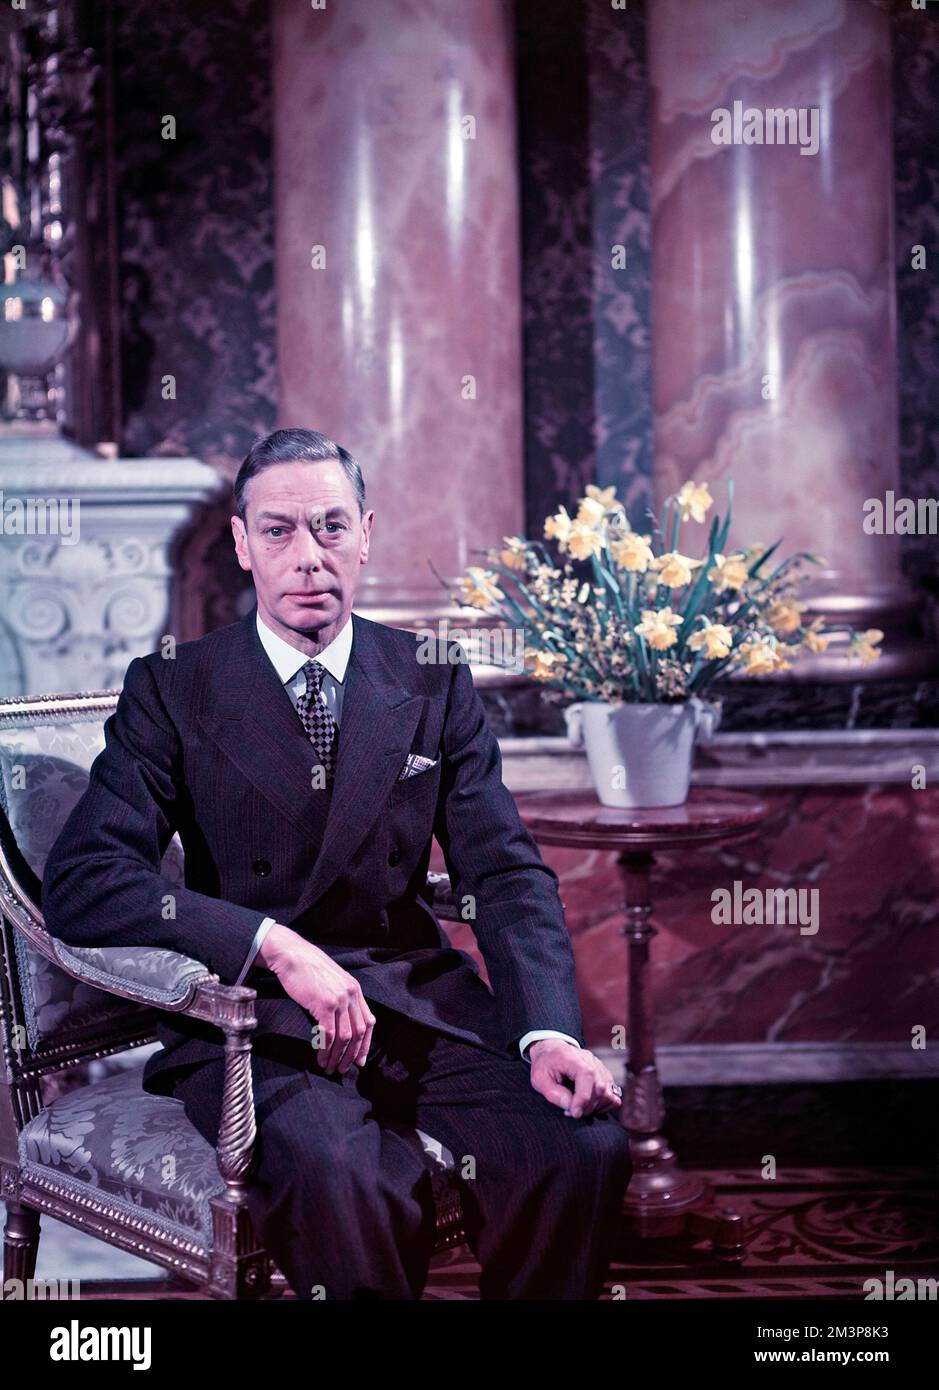 König George VI. (1895-1952), König des Vereinigten Königreichs (1936-1952), der in seinem späteren Leben neben einer Vase aus Narzissen saß Datum: Ca. Ende 1940er Stockfoto